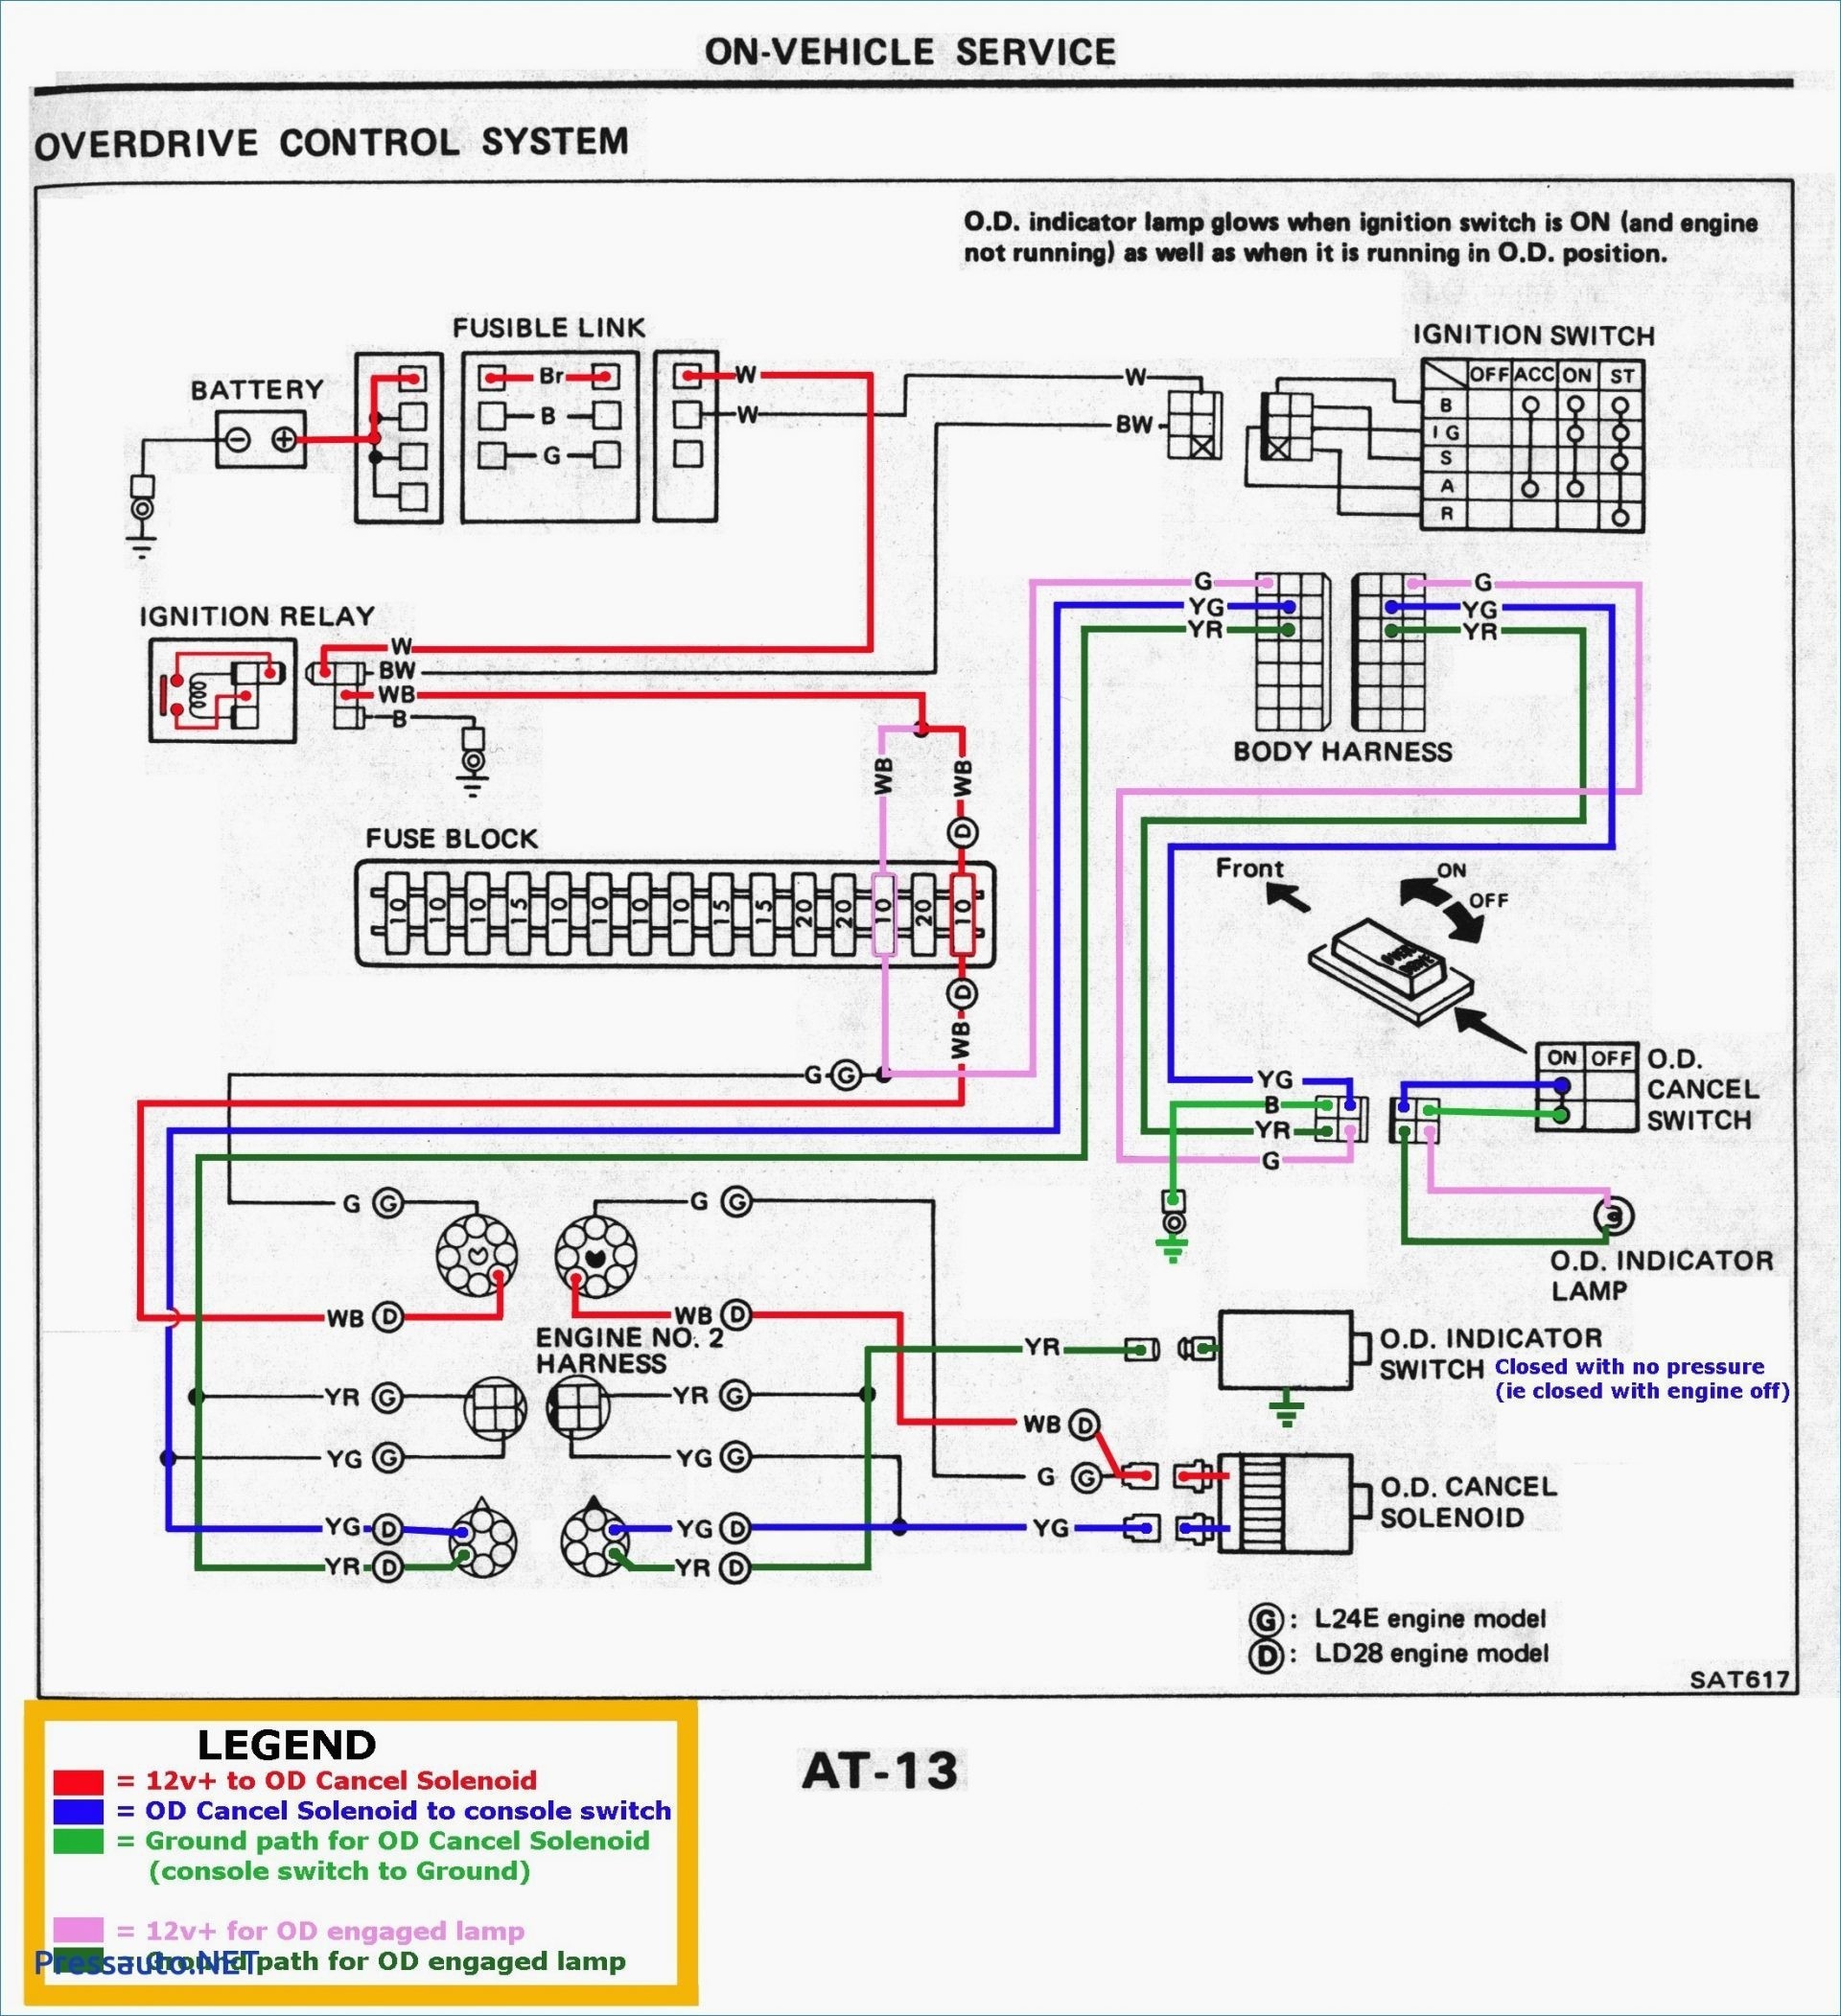 Opel Corsa Utility 1 4 Engine Diagram | My Wiring DIagram